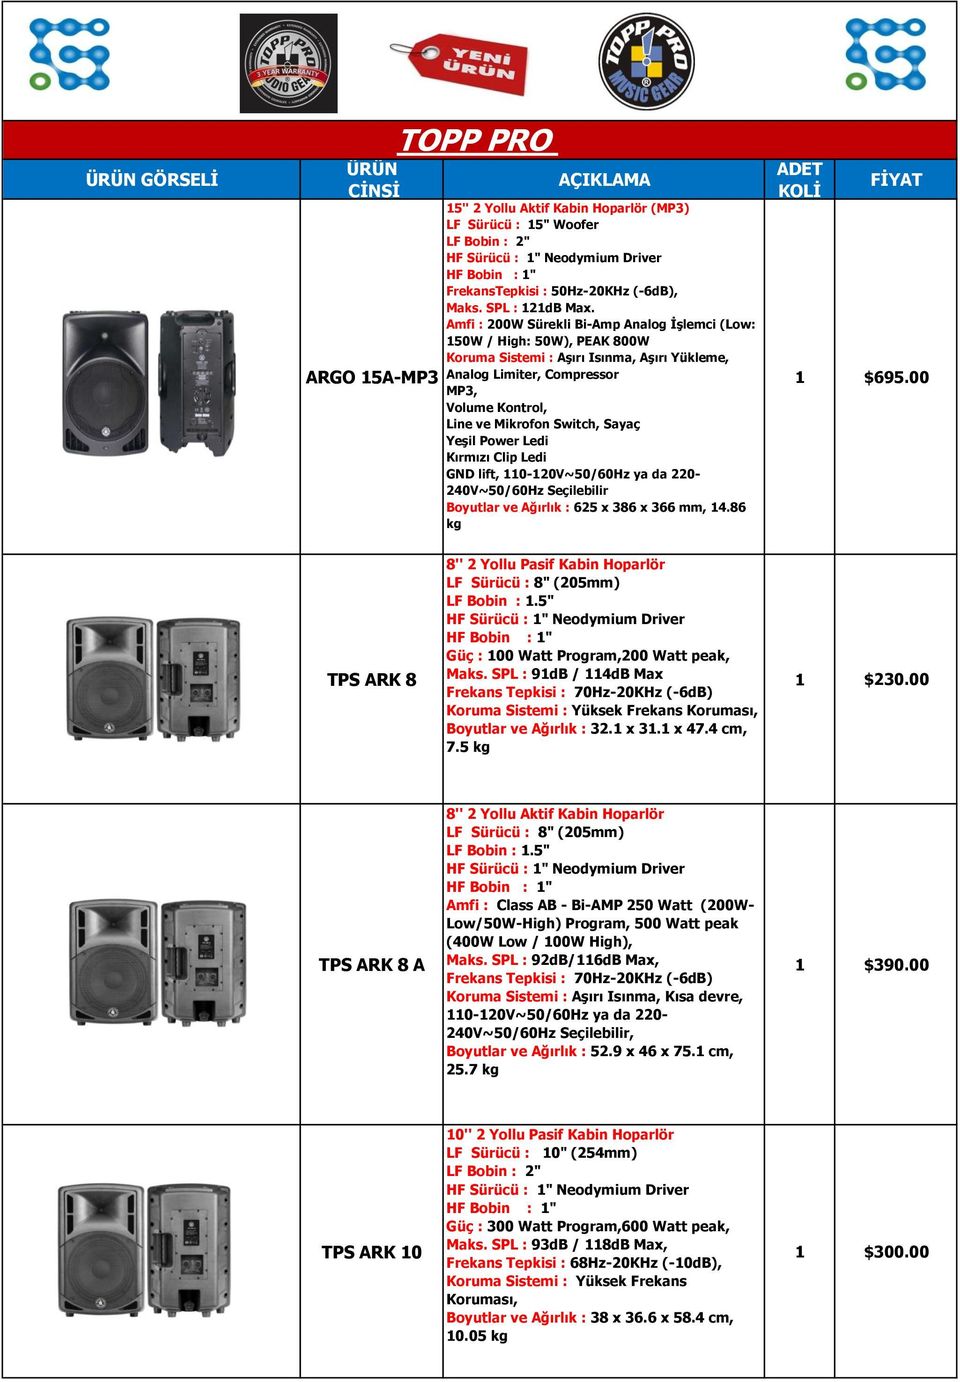 Amfi : 200W Sürekli Bi-Amp Analog İşlemci (Low: 150W / High: 50W), PEAK 800W Koruma Sistemi : Aşırı Isınma, Aşırı Yükleme, Analog Limiter, Compressor MP3, Volume Kontrol, Line ve Mikrofon Switch,